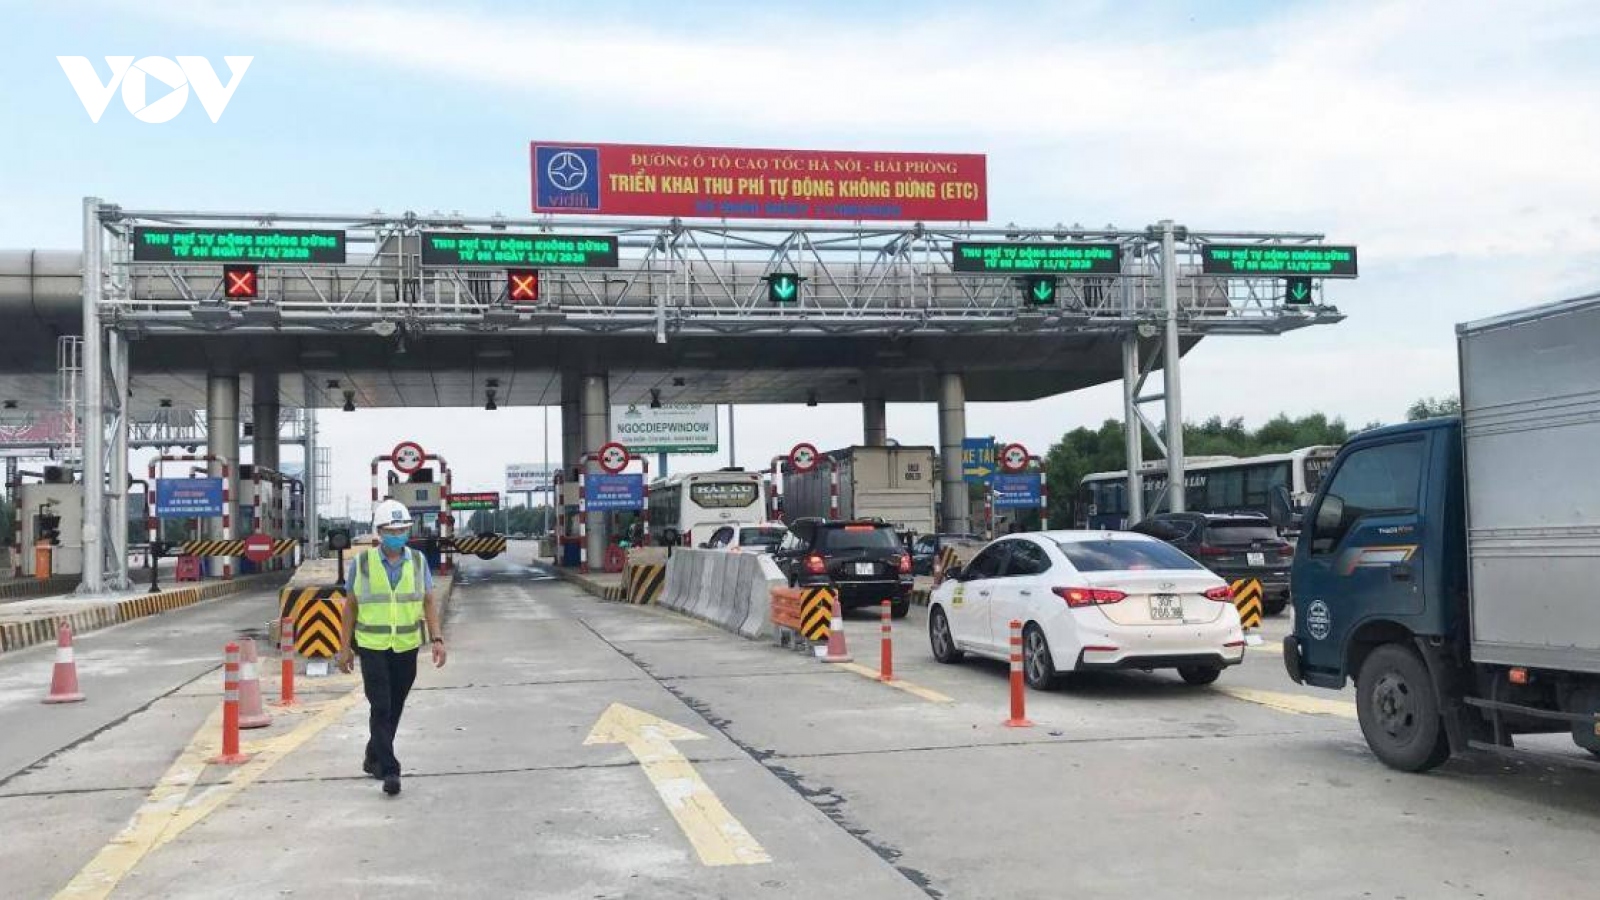 Sau 1 tháng chỉ thu phí tự động, bao nhiêu xe đi vào cao tốc Hà Nội-Hải Phòng?